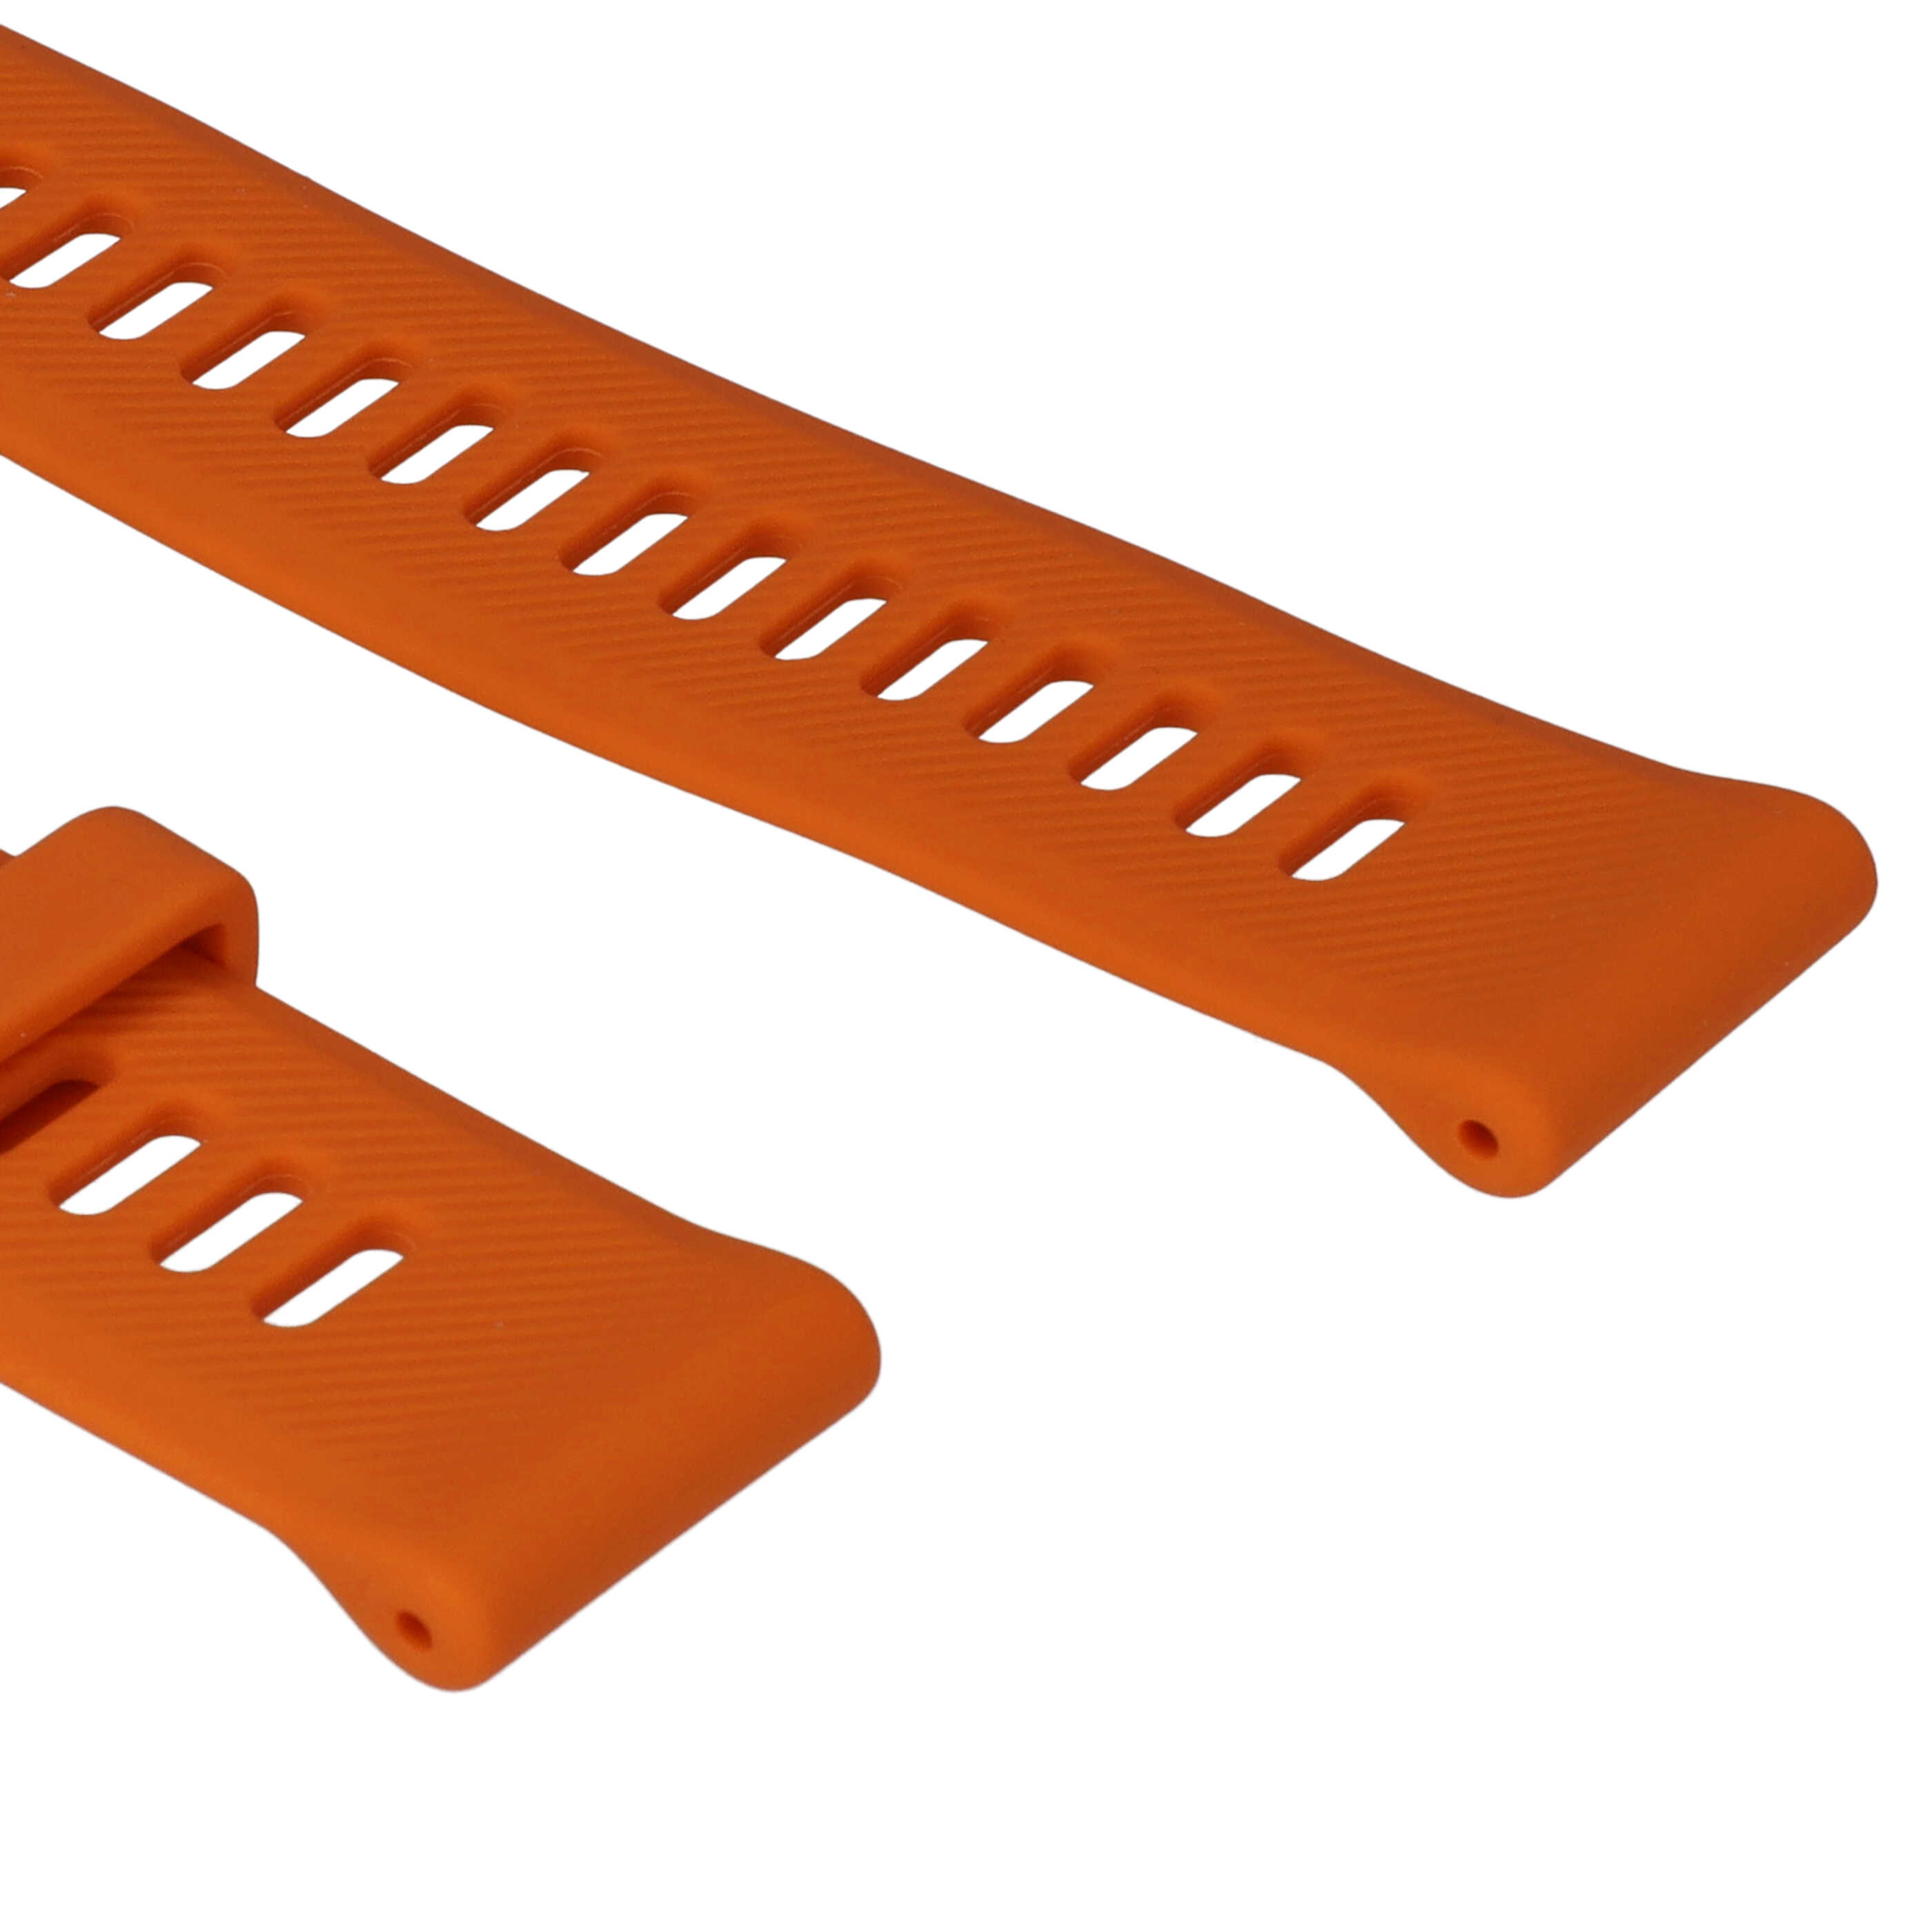 Bracelet pour montre intelligente Garmin Forerunner - 9 + 12,2 cm de long, 22mm de large, silicone, orange